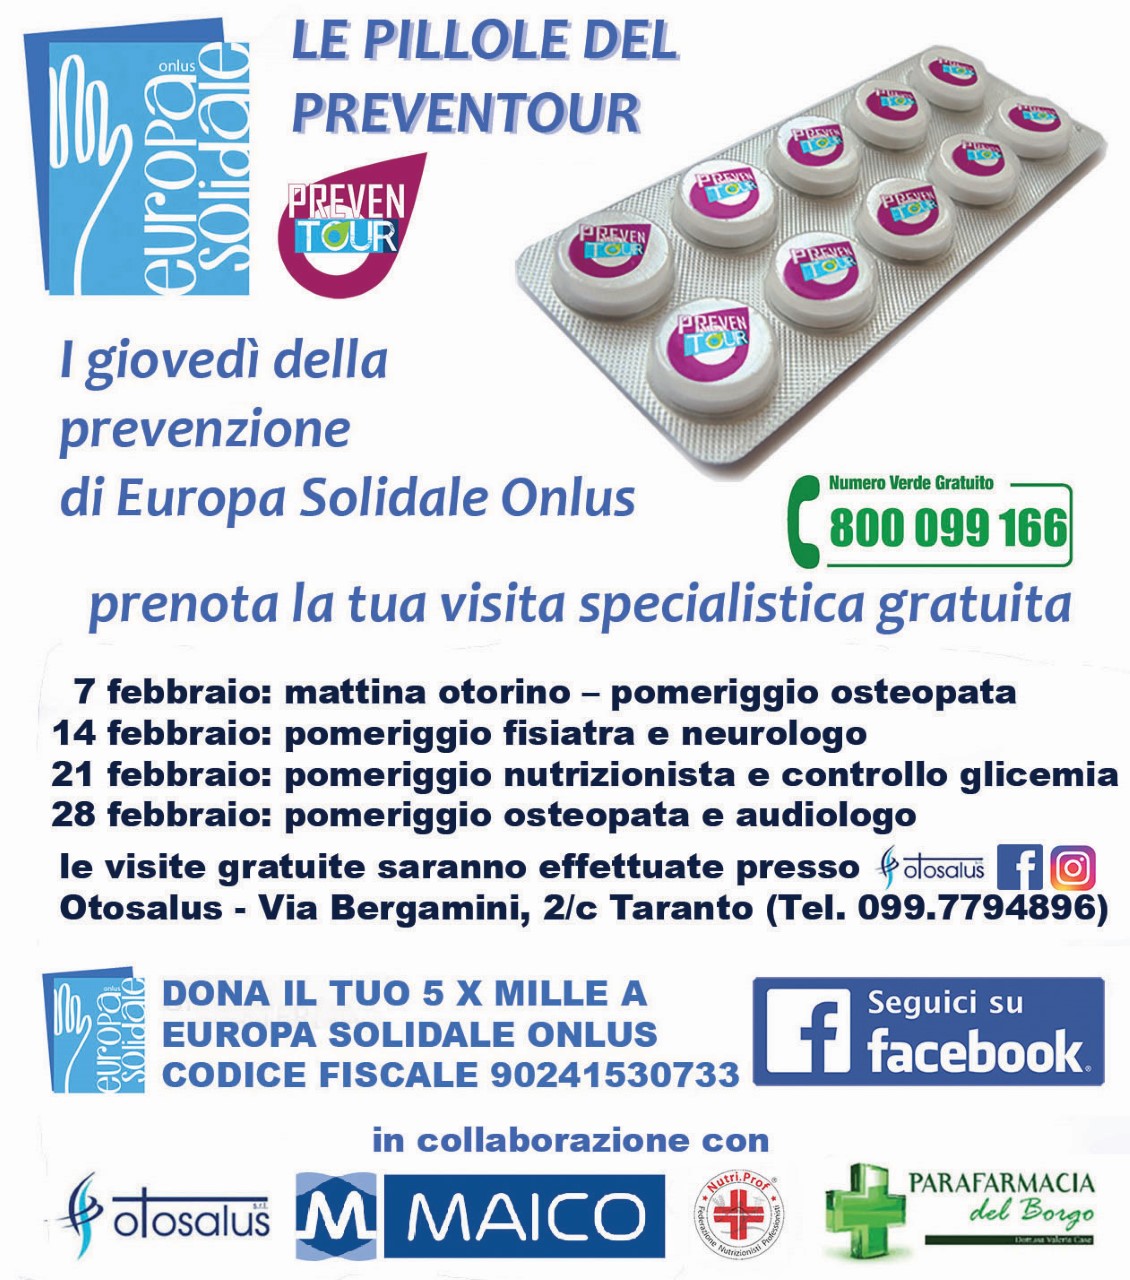 A Taranto la prevenzione sanitaria con le “Pillole del Preventour”